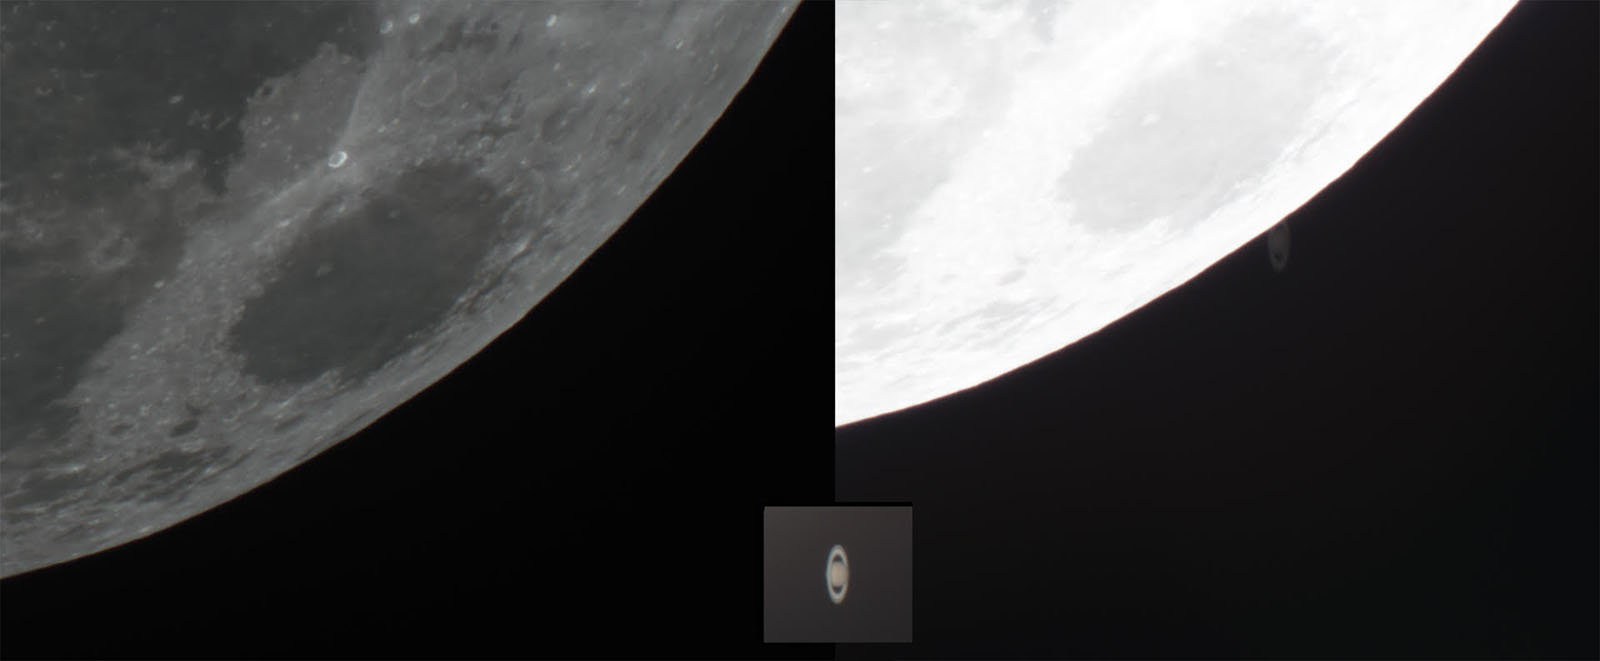 Bức ảnh chụp Sao Thổ lâp ló đằng sau Mặt Trăng thú vị từ NAG Paul Stewart